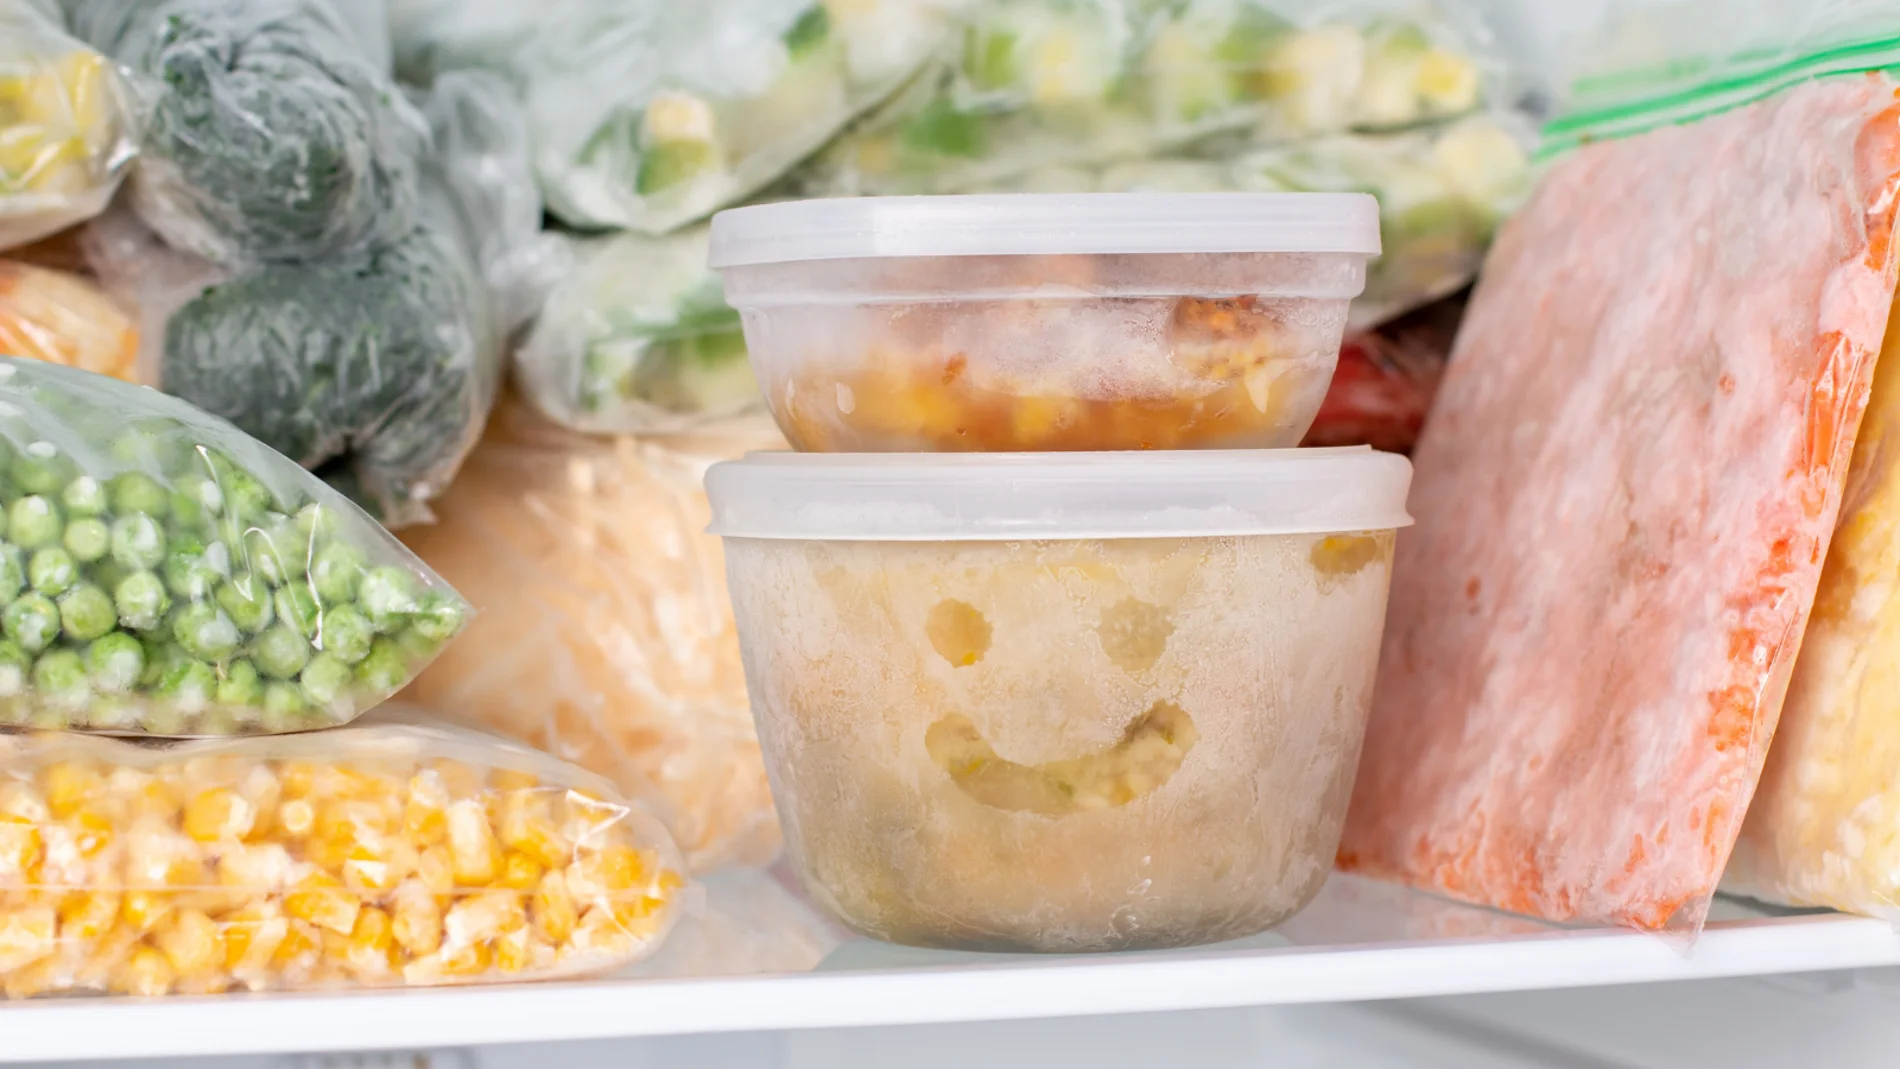 Desafiando los mitos: descubre los alimentos congelados sin pérdida de calidad nutricional